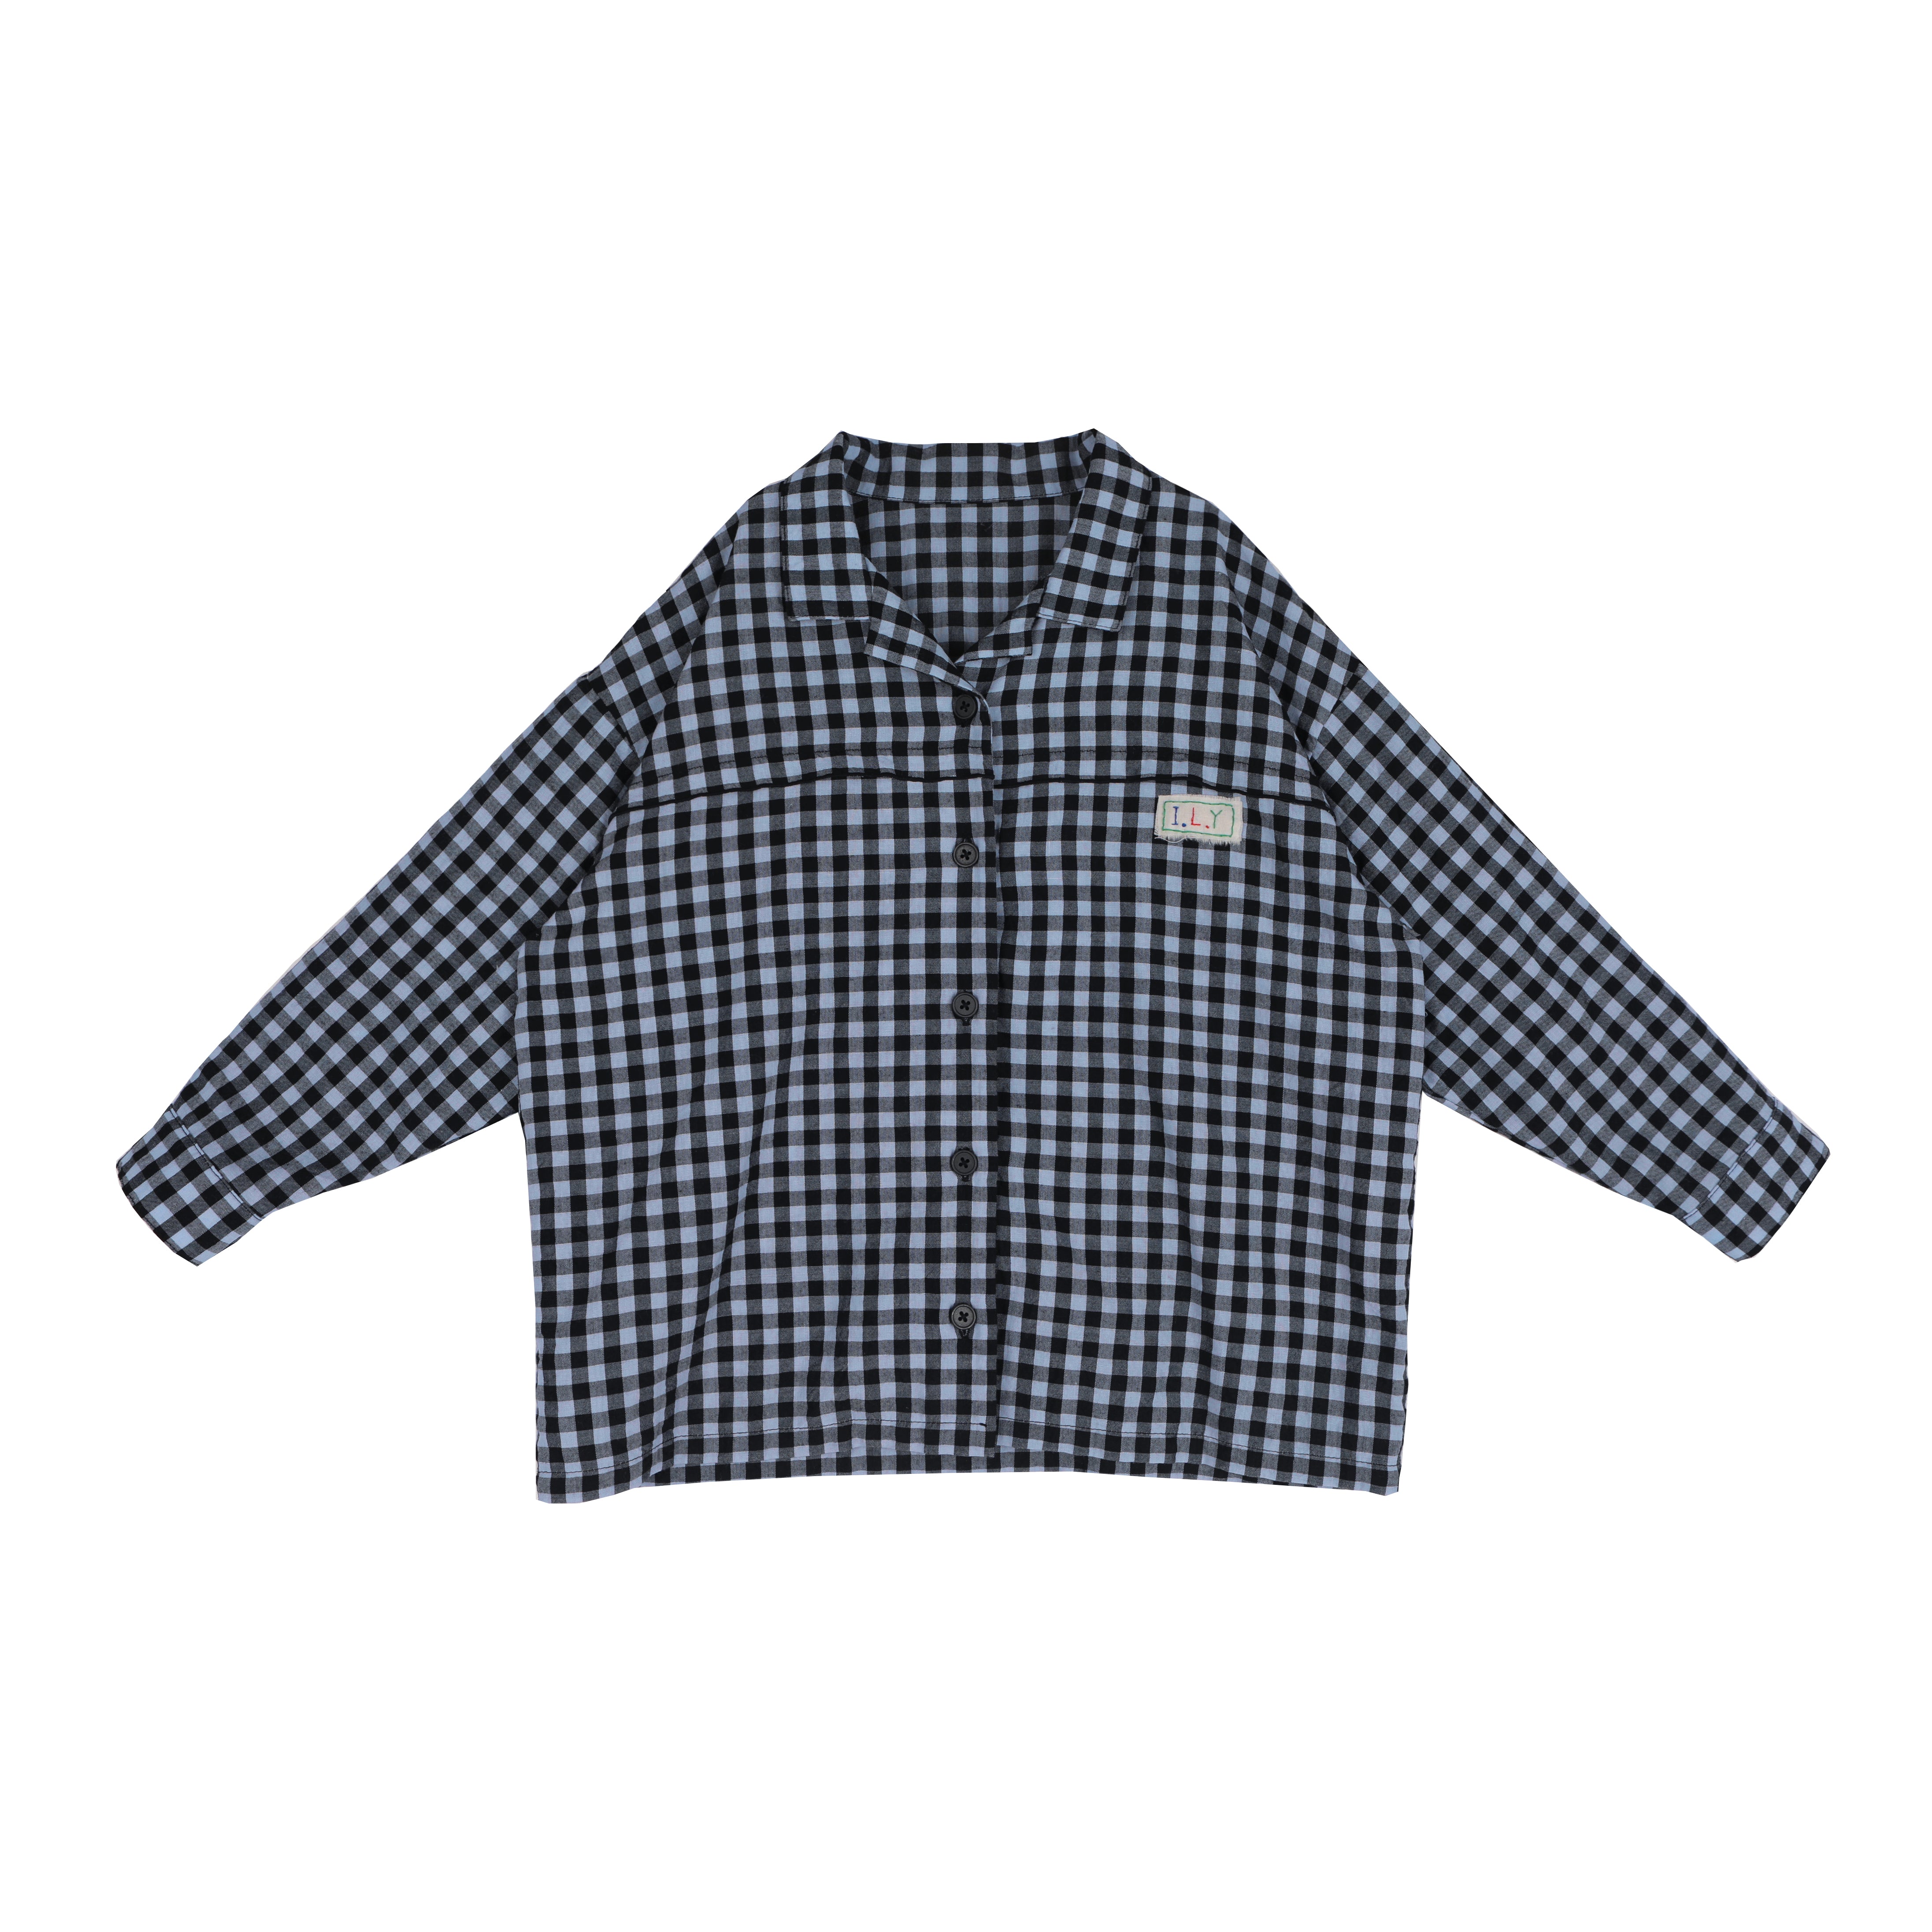 Tambere Irine Kid's Button-down Shirt Azure Blue Gingham Check | BIEN BIEN bienbienshop.com